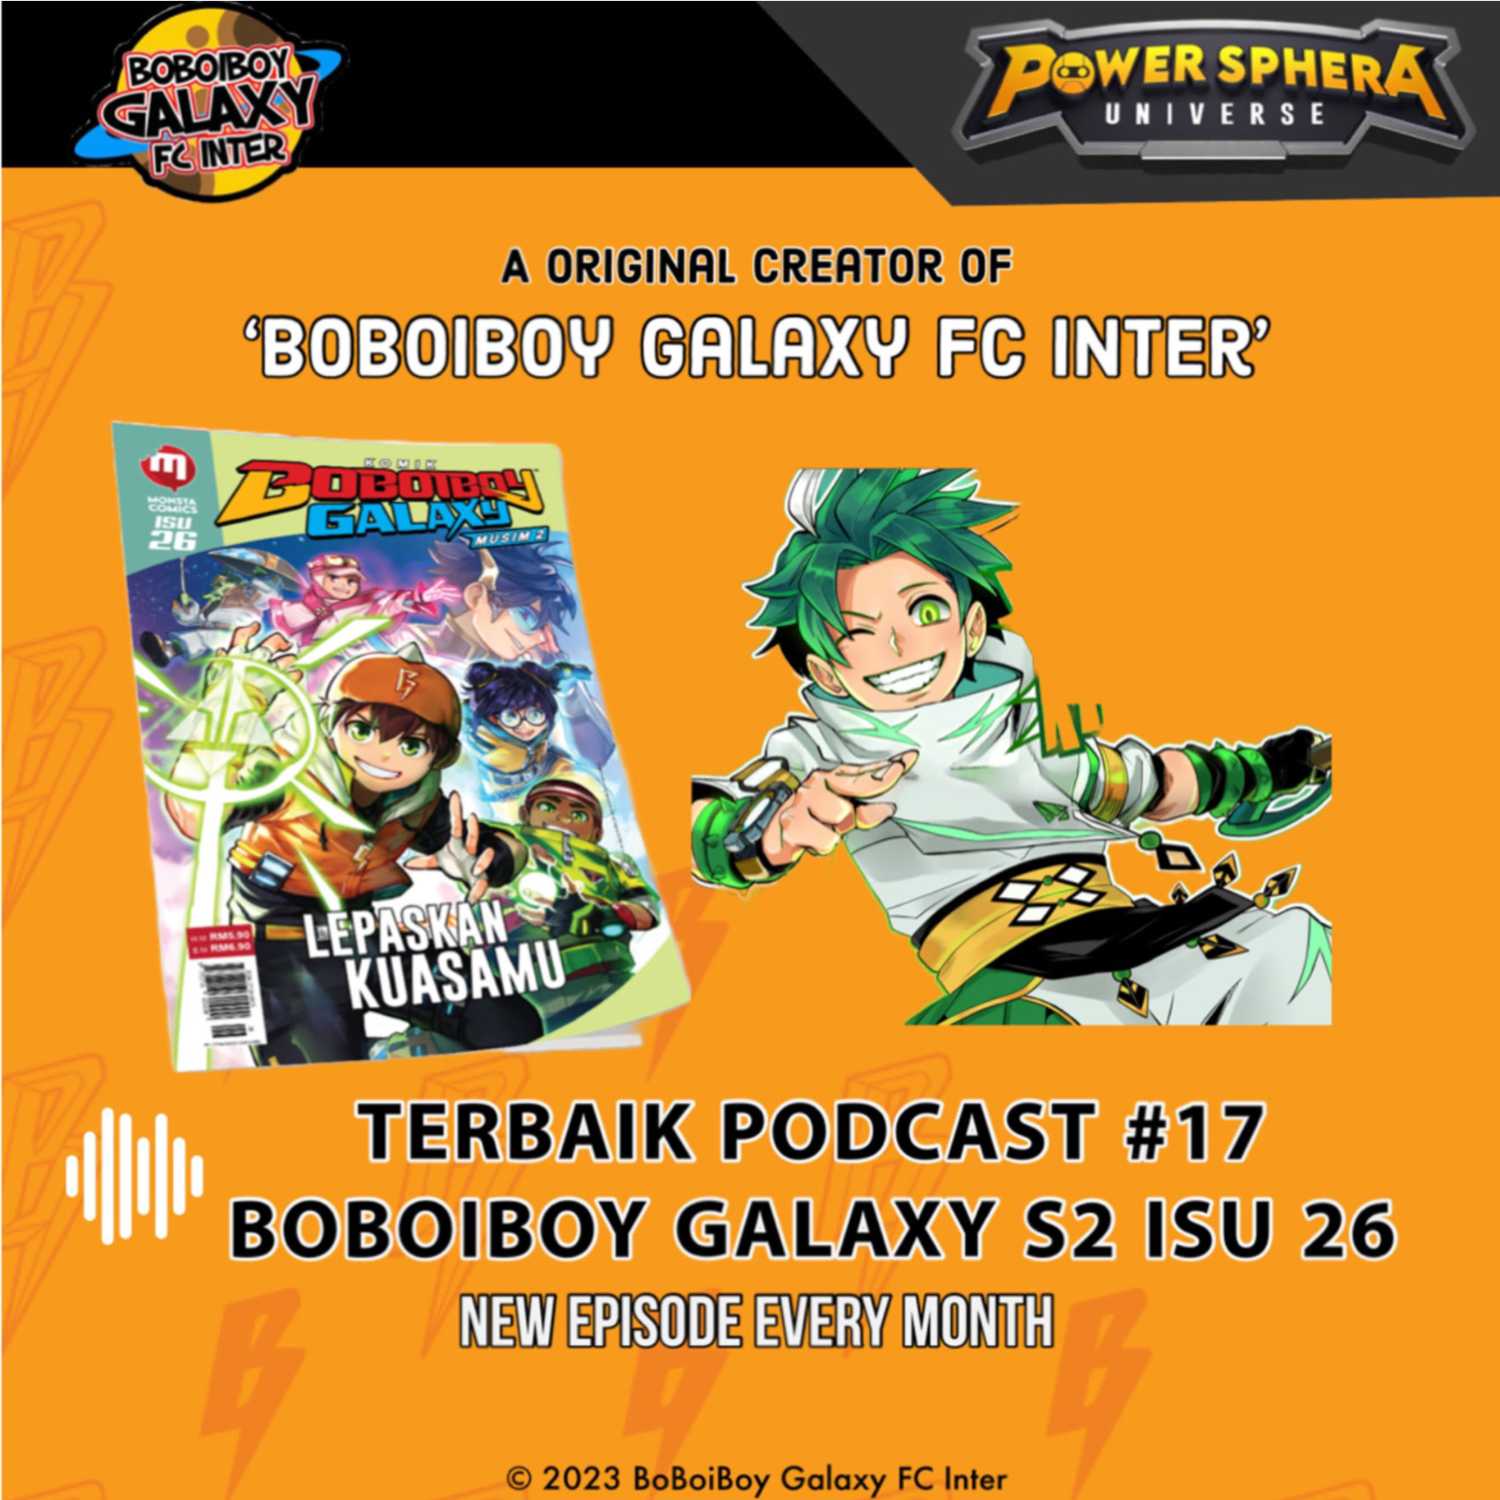 Terbaik Podcast #17 - BoBoiBoy Galaxy Season 2 isu 26 Spoiler